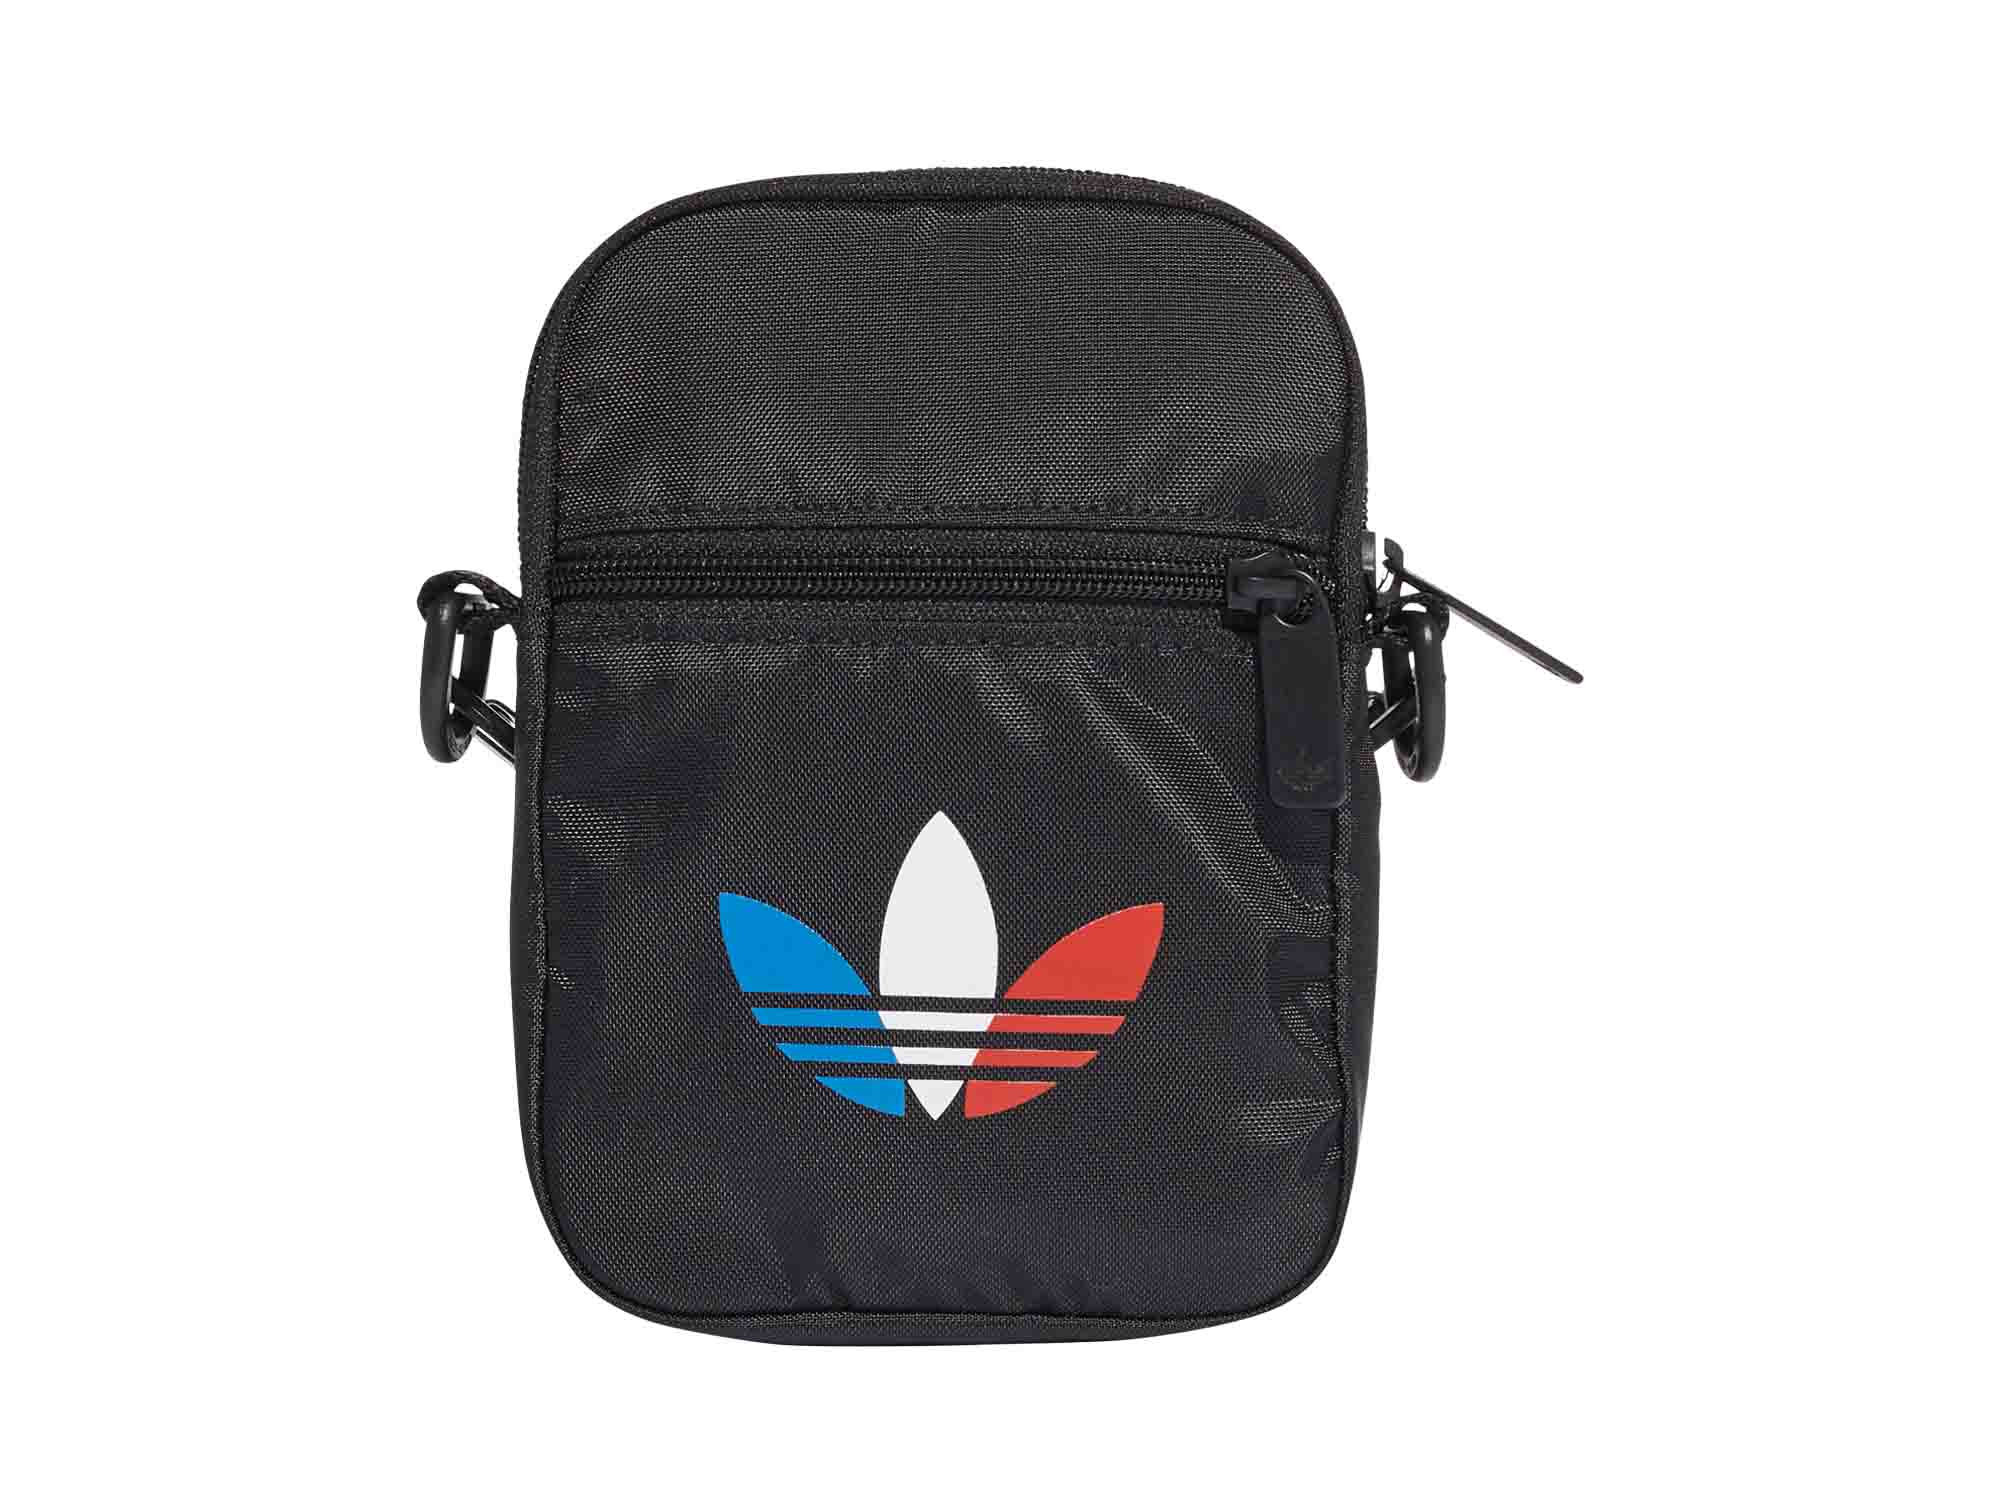 Adidas Originals Tricolor Festival Bag